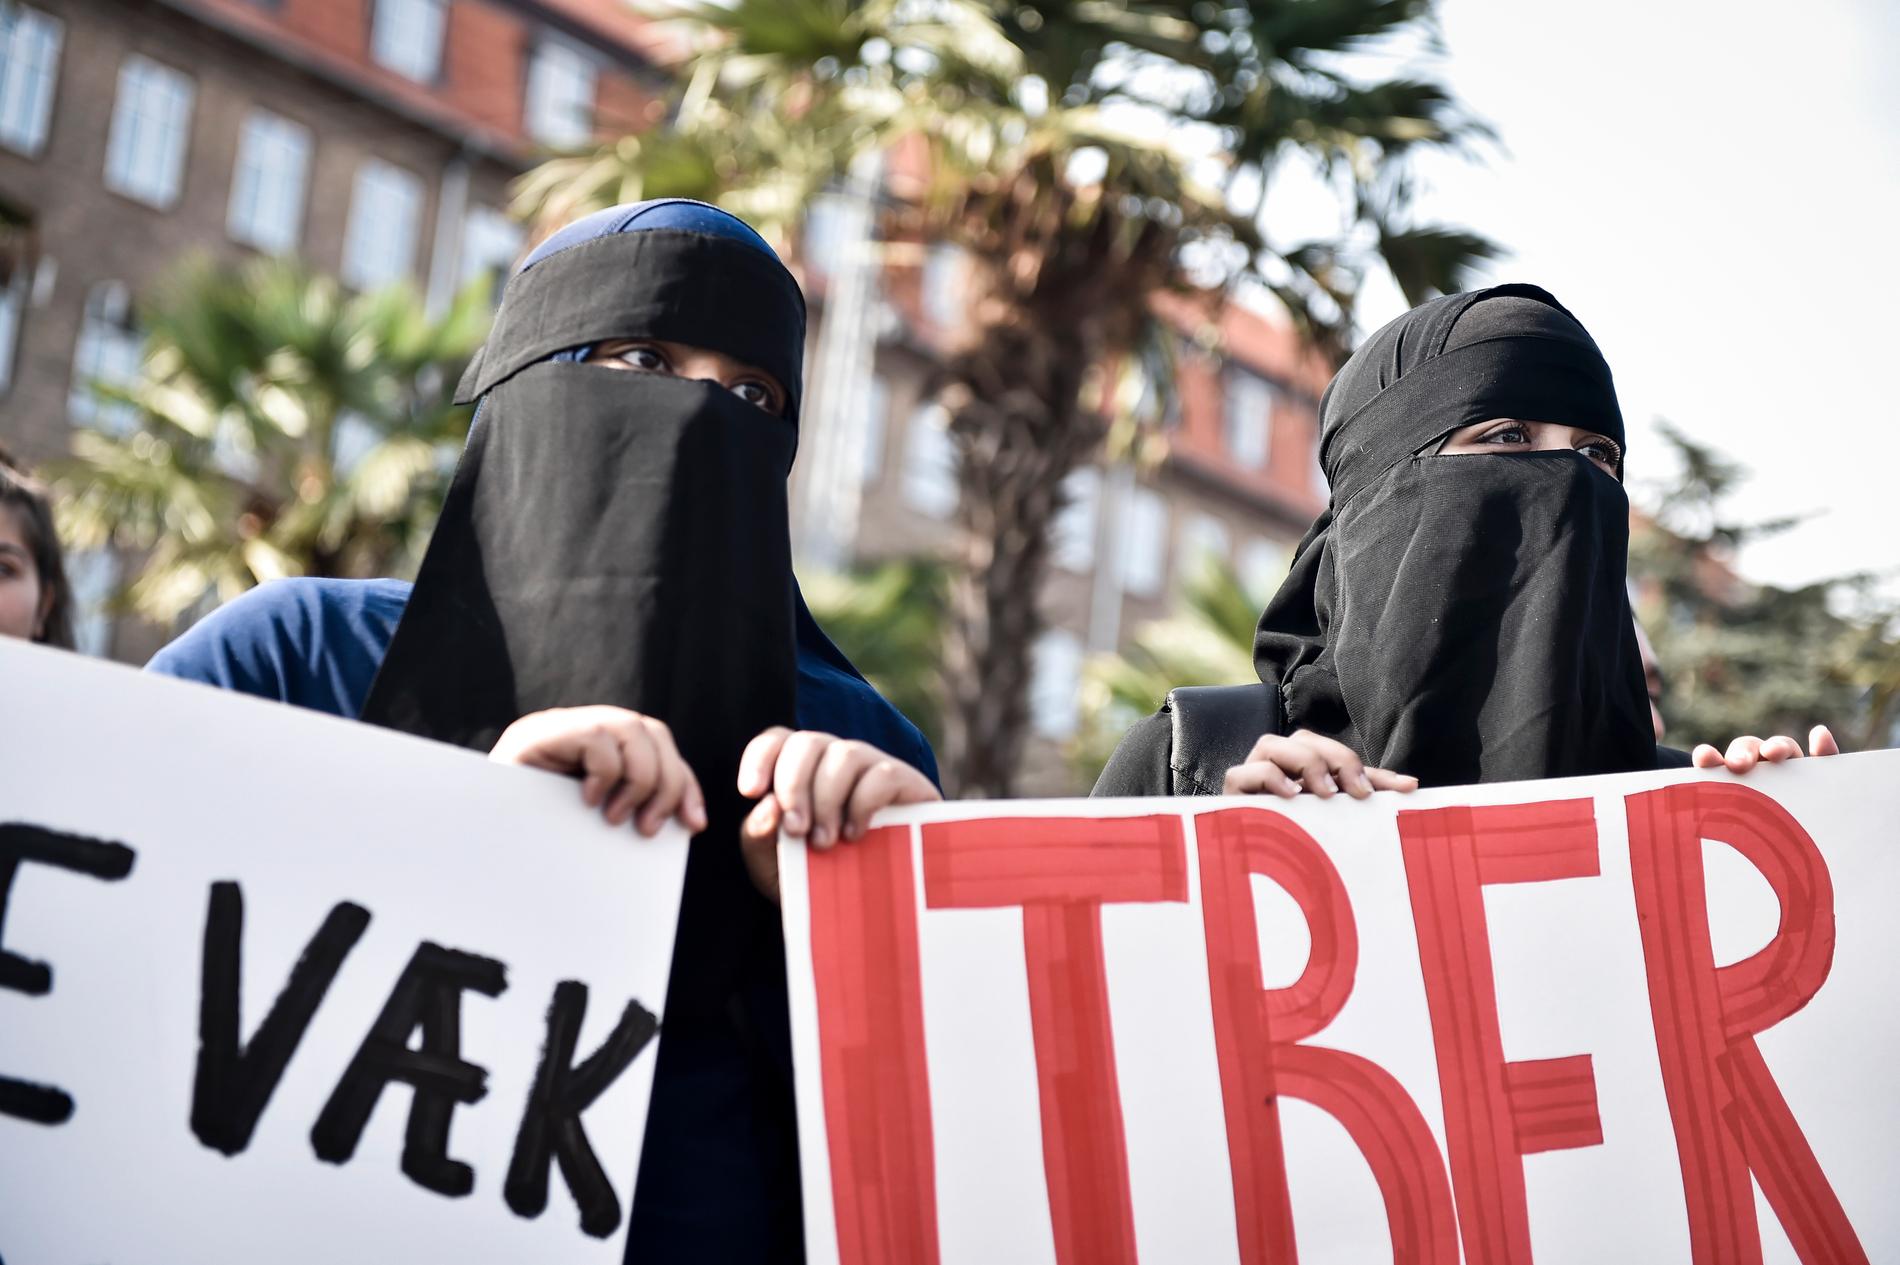 Den danska lagen som förbjuder ansiktstäckande klädsel på offentlig plats har kritiserats för att rikta sig mot muslimer.